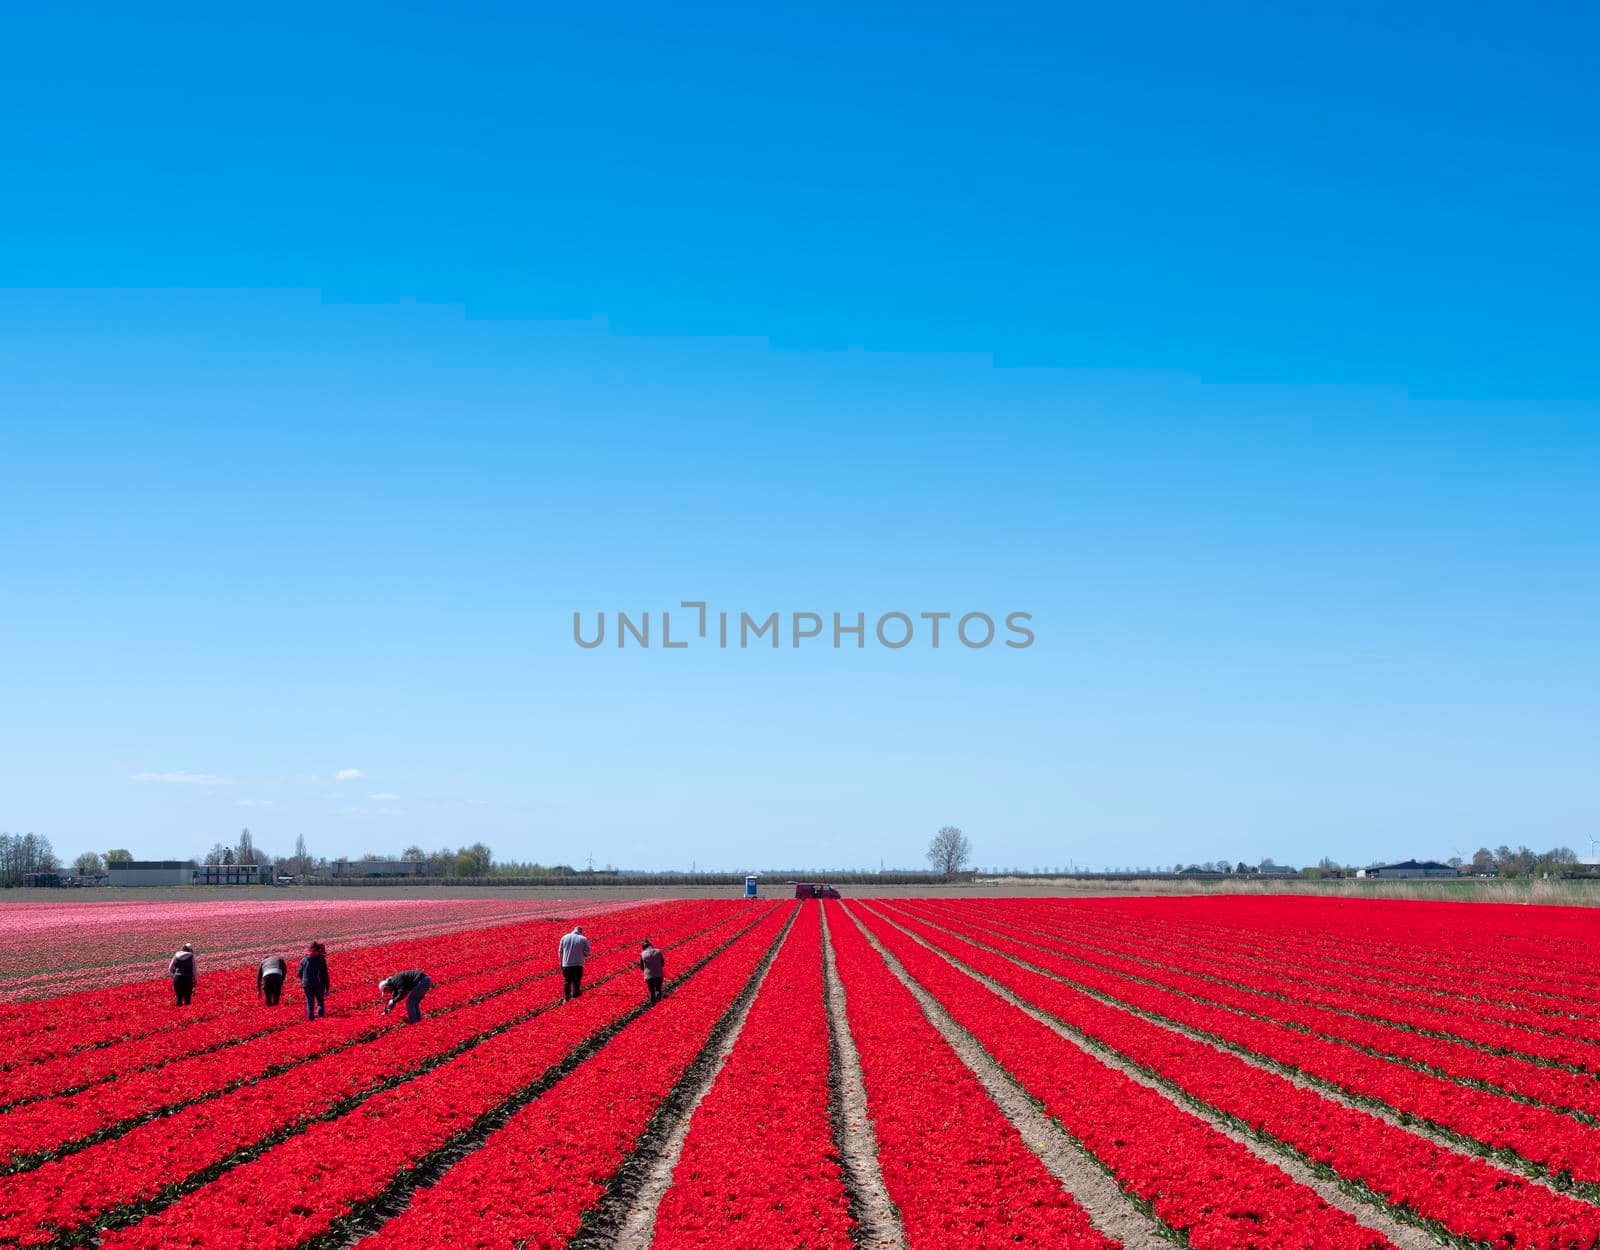 people work in field of red tulips in holland by ahavelaar